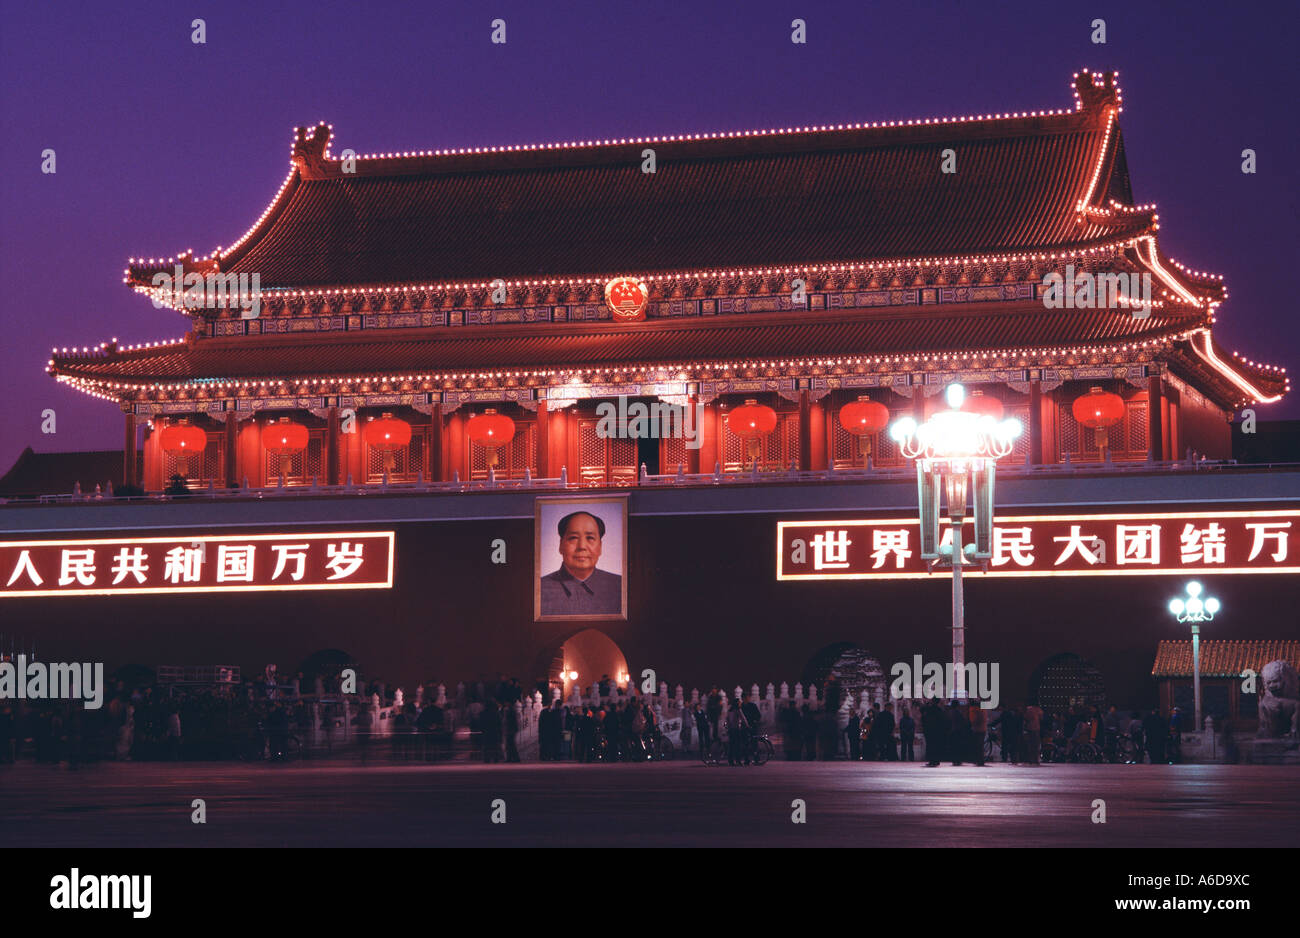 1677 Tian an men porte de la paix céleste Pékin Chine Asie Mao architecture nuit Banque D'Images